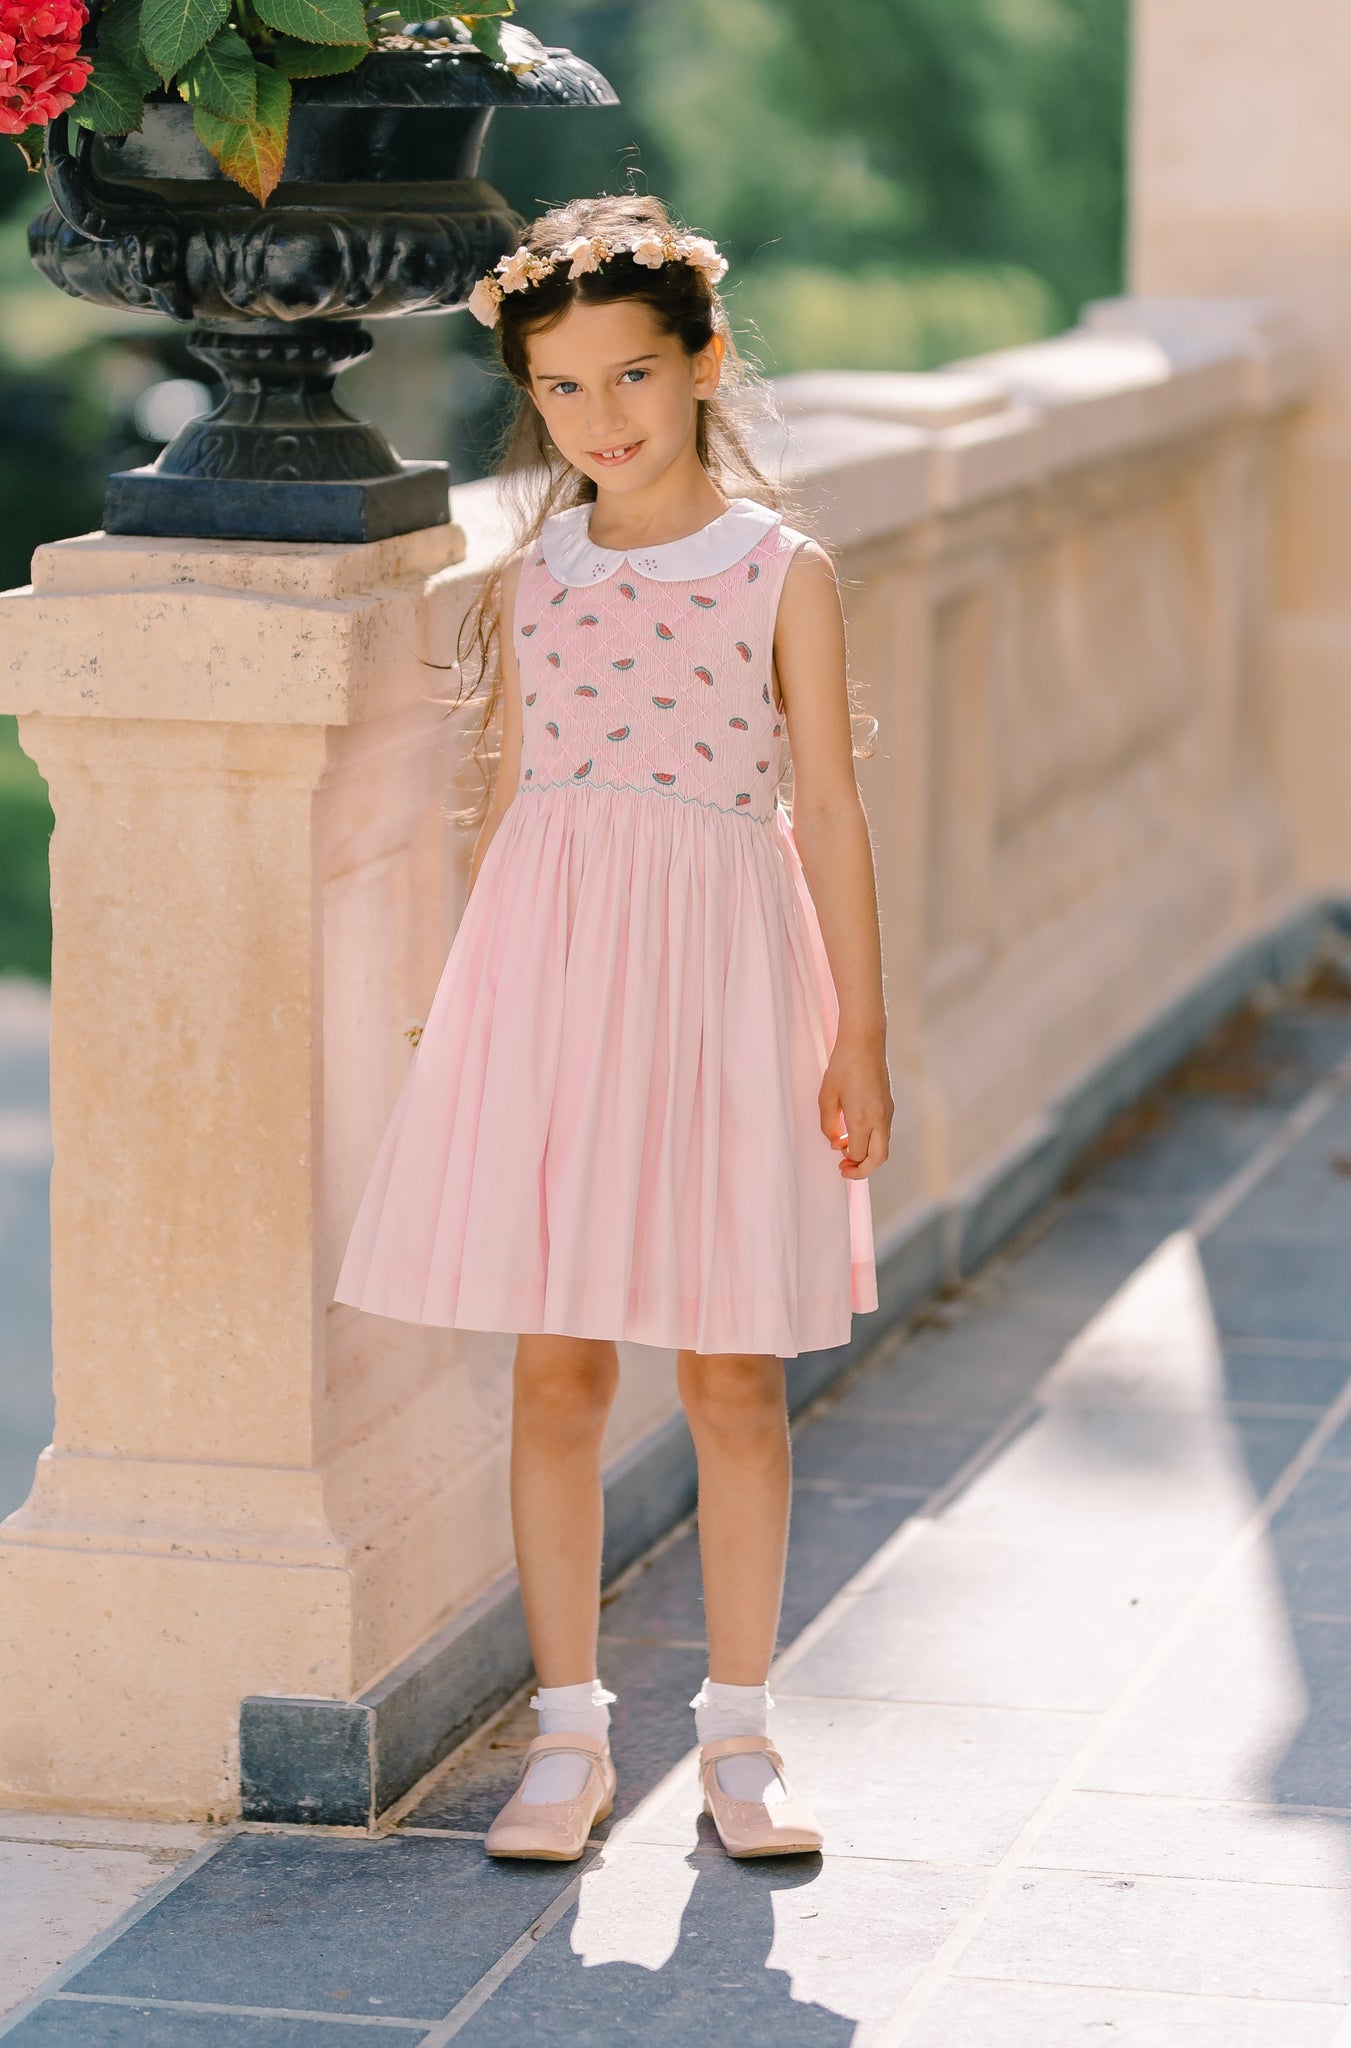 Antoinette Handmade Smocked Paris Dresses |